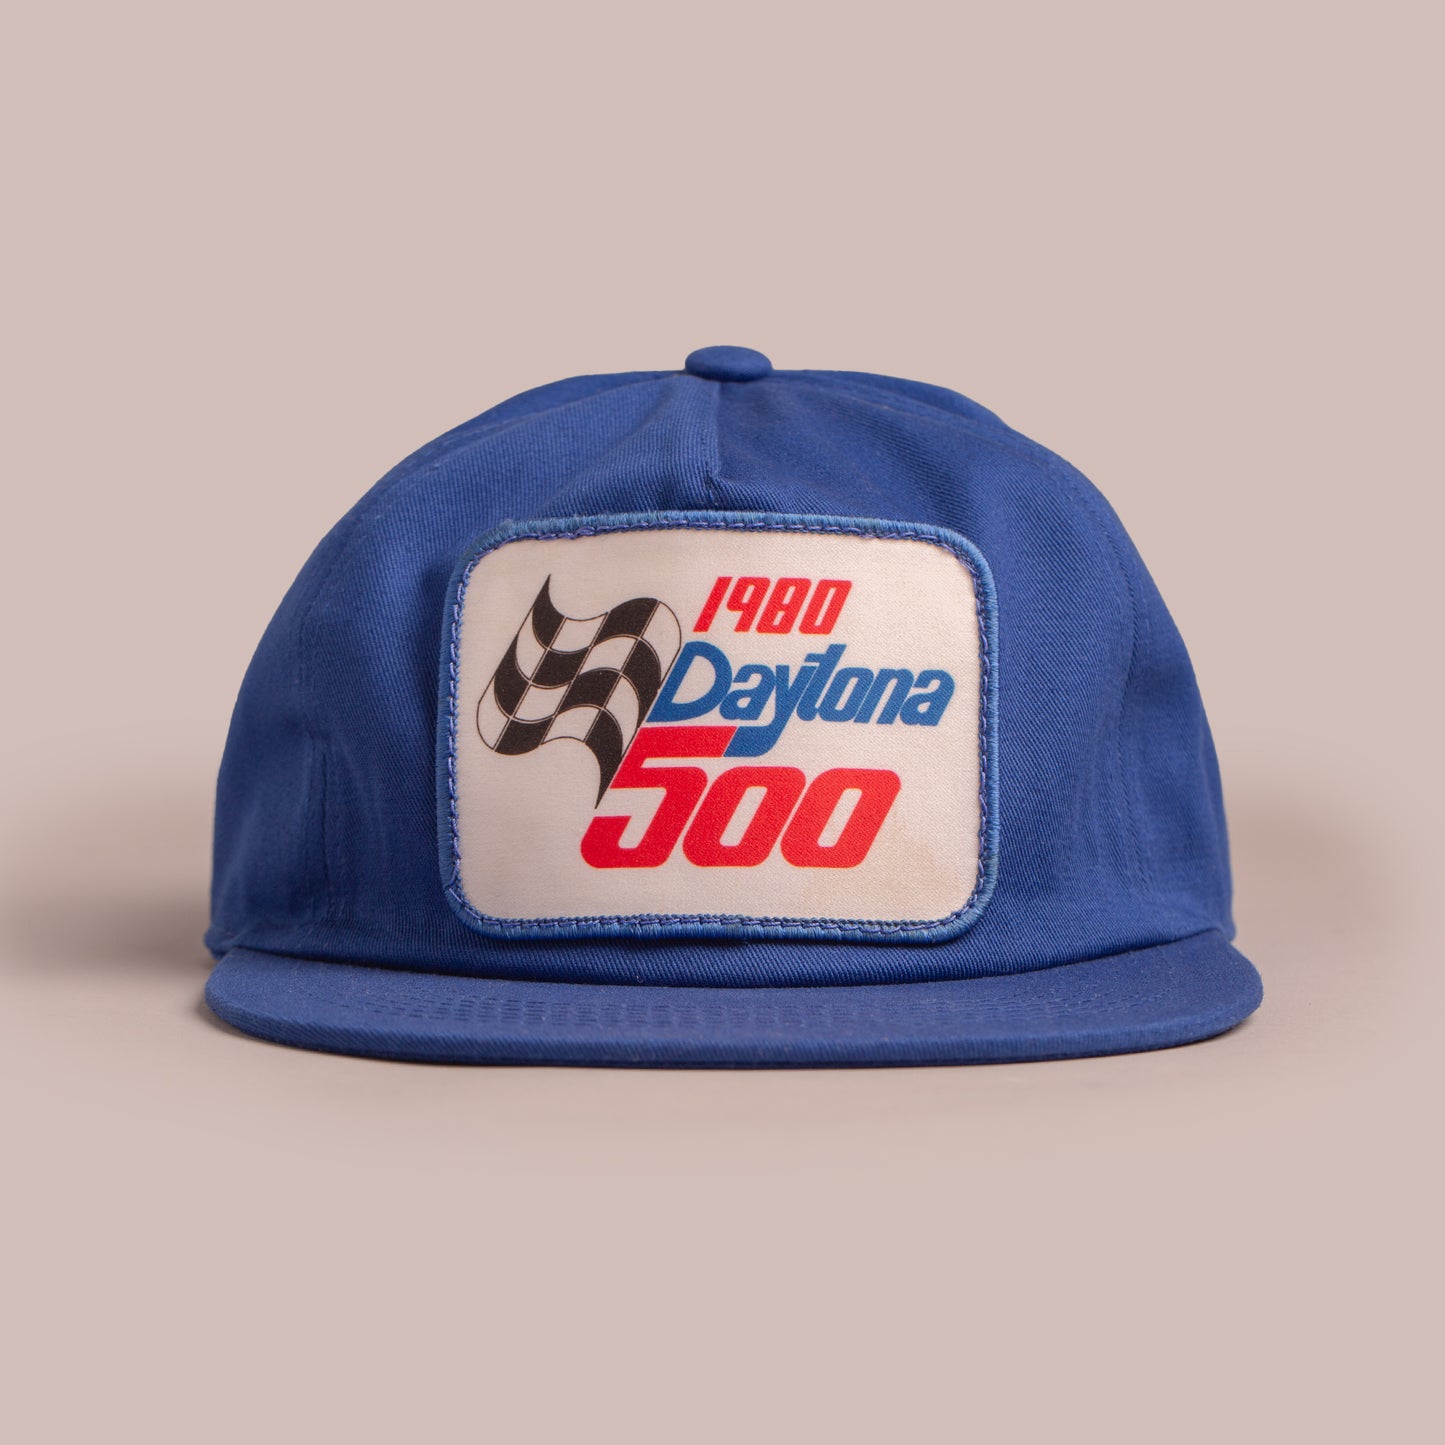 1980 Daytona 500 Nissi Cap